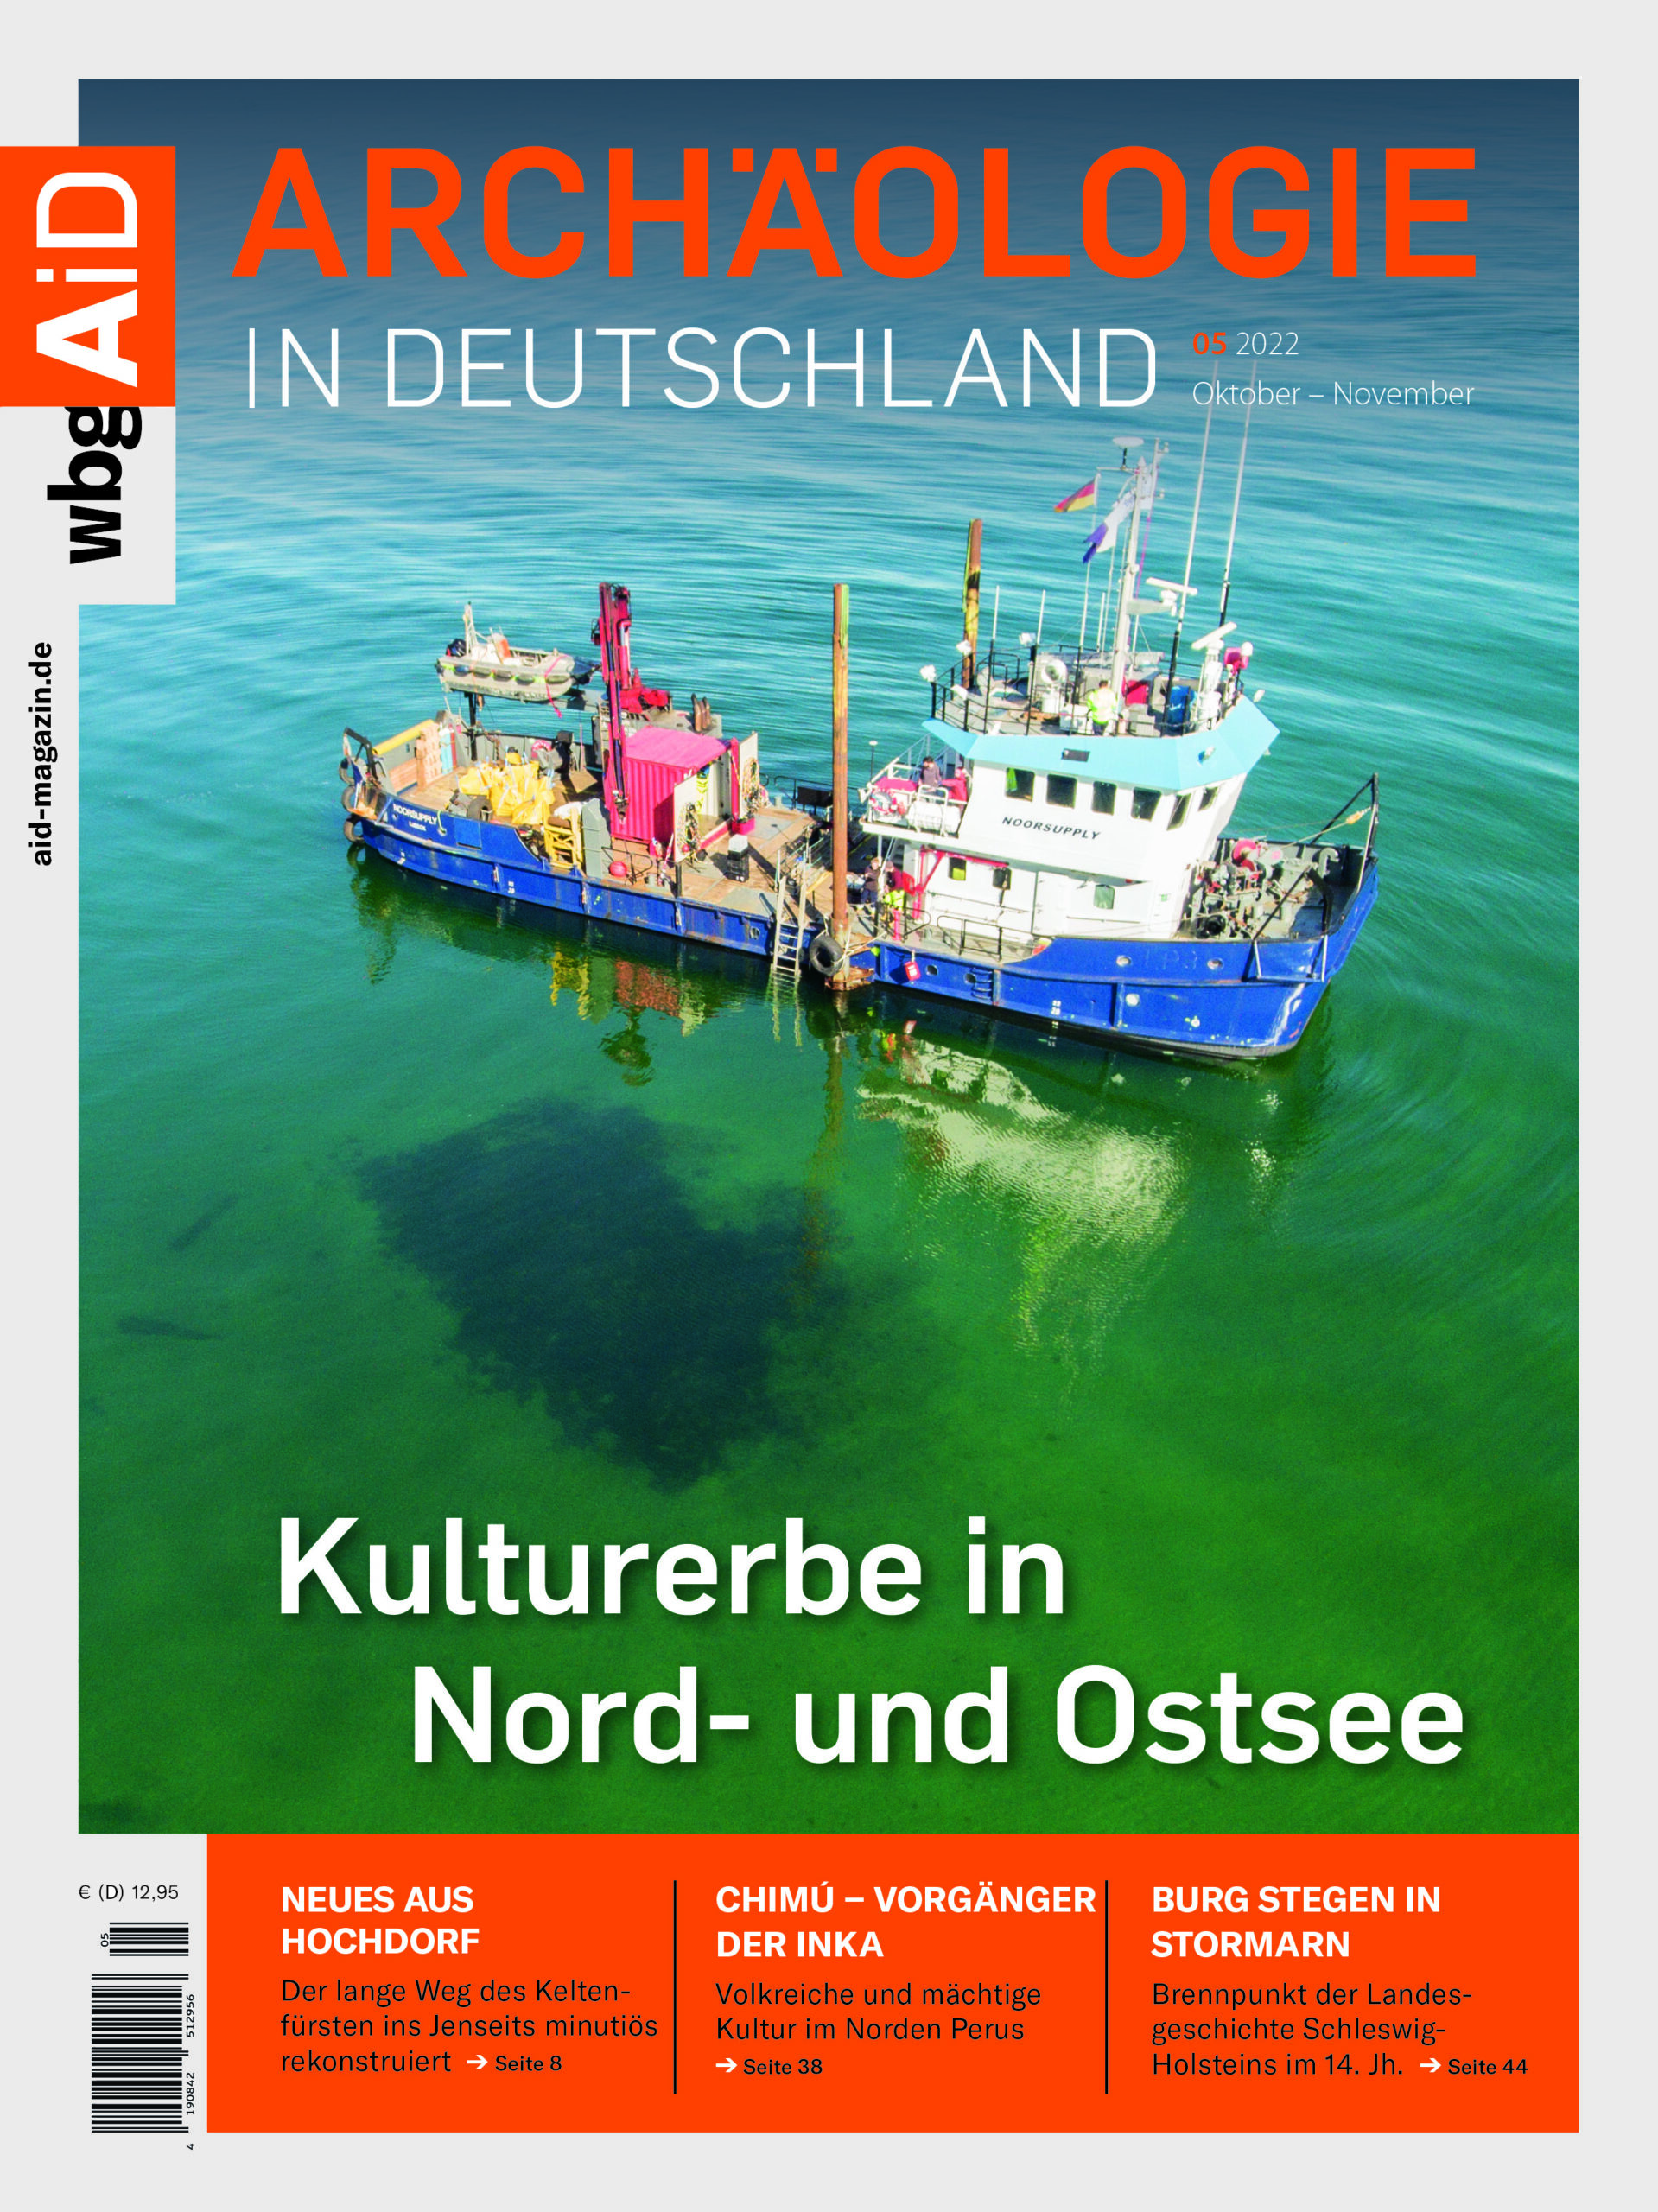 »Kulturerbe in Nord- und Ostsee« – Archäologie in Deutschland 5/22